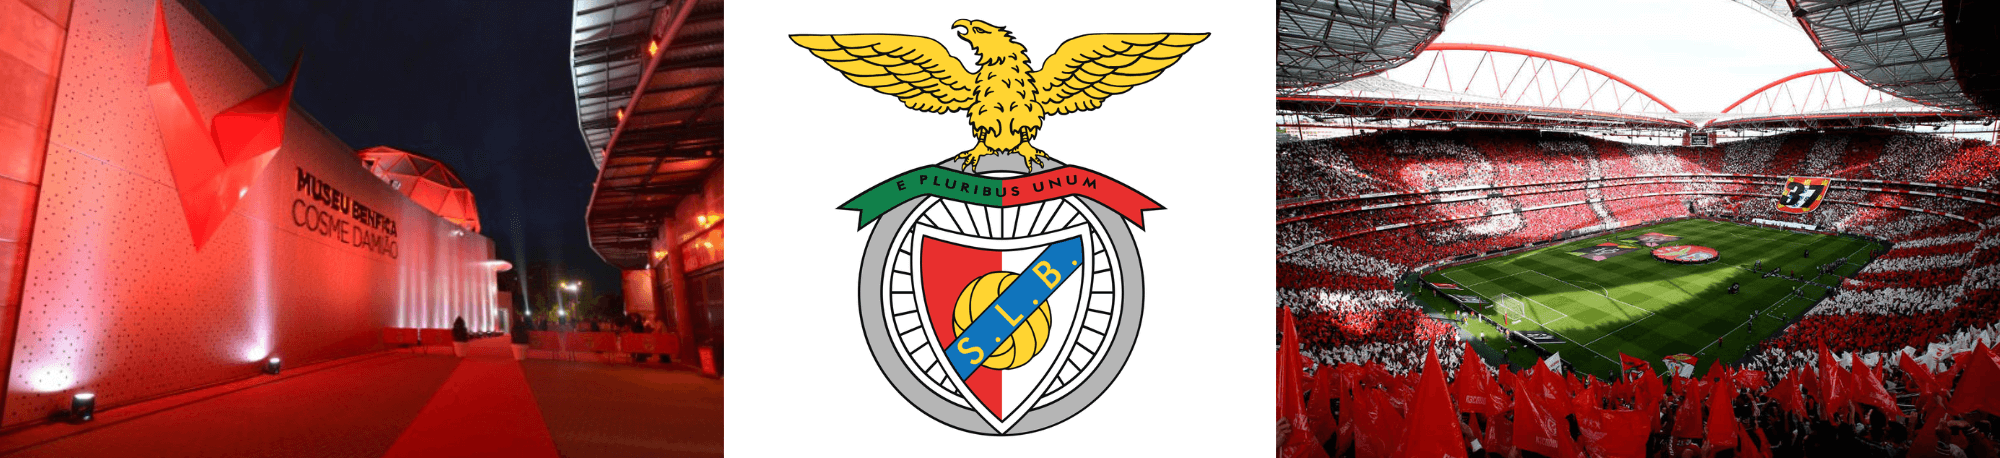 Benfica Museum, Club Crest and Stadium